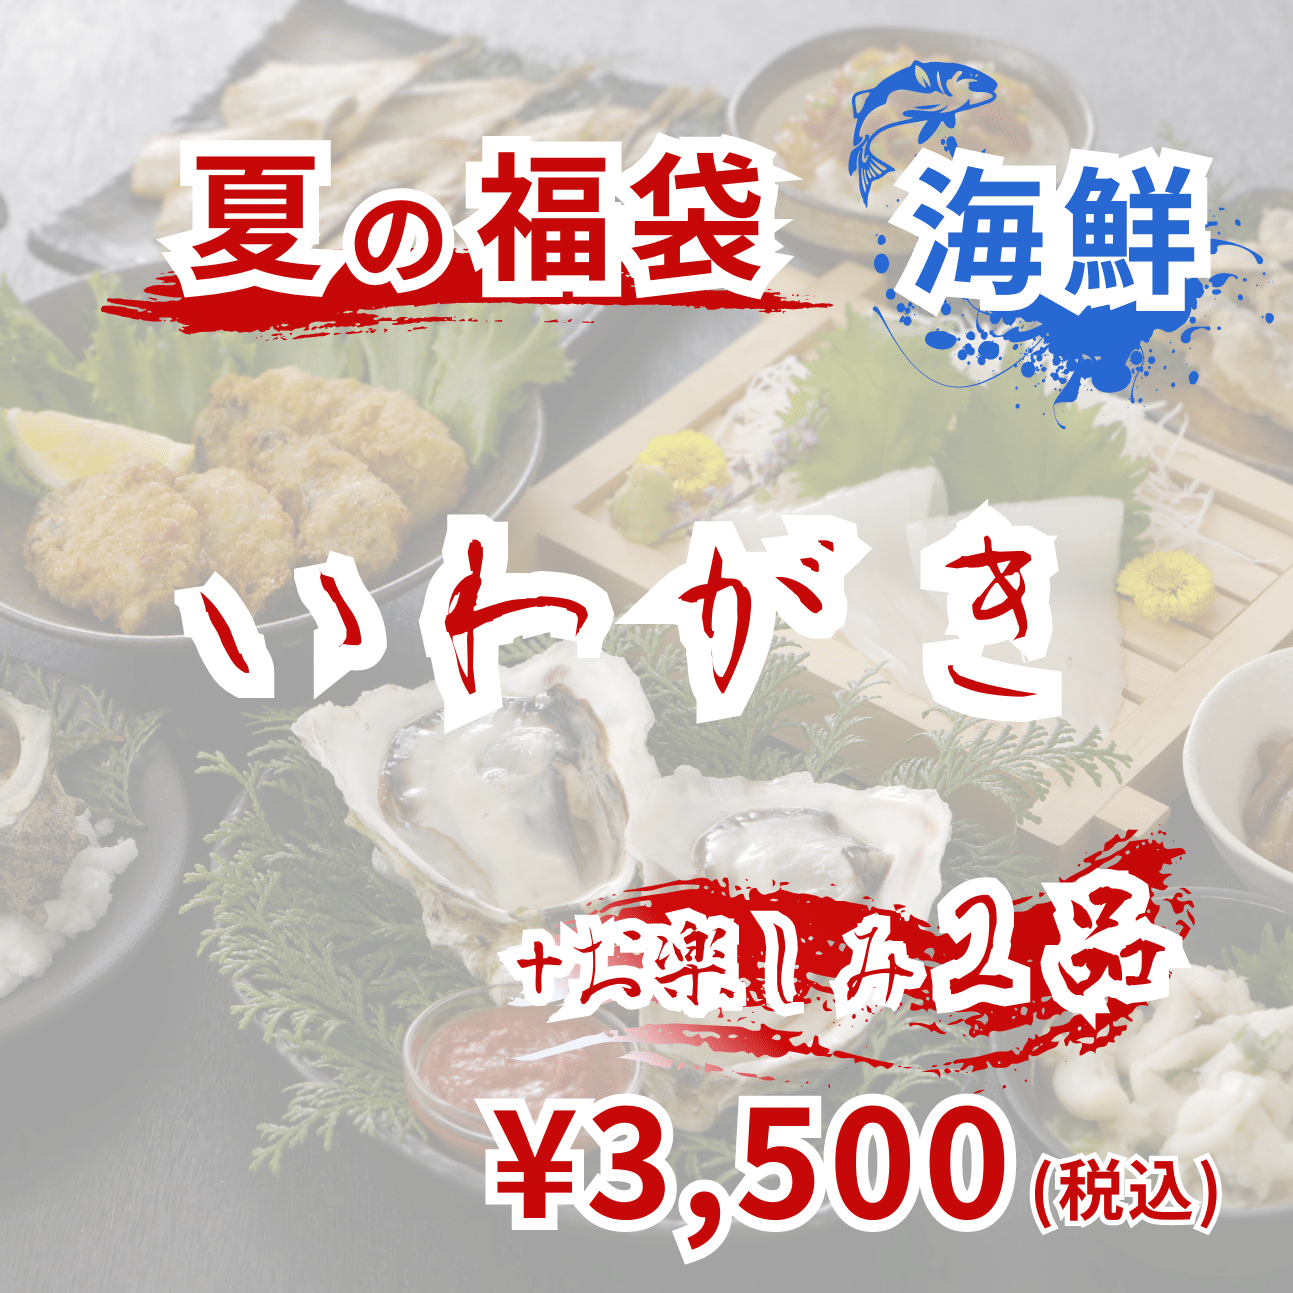 夏の福袋【海鮮3,500円】【送料無料】